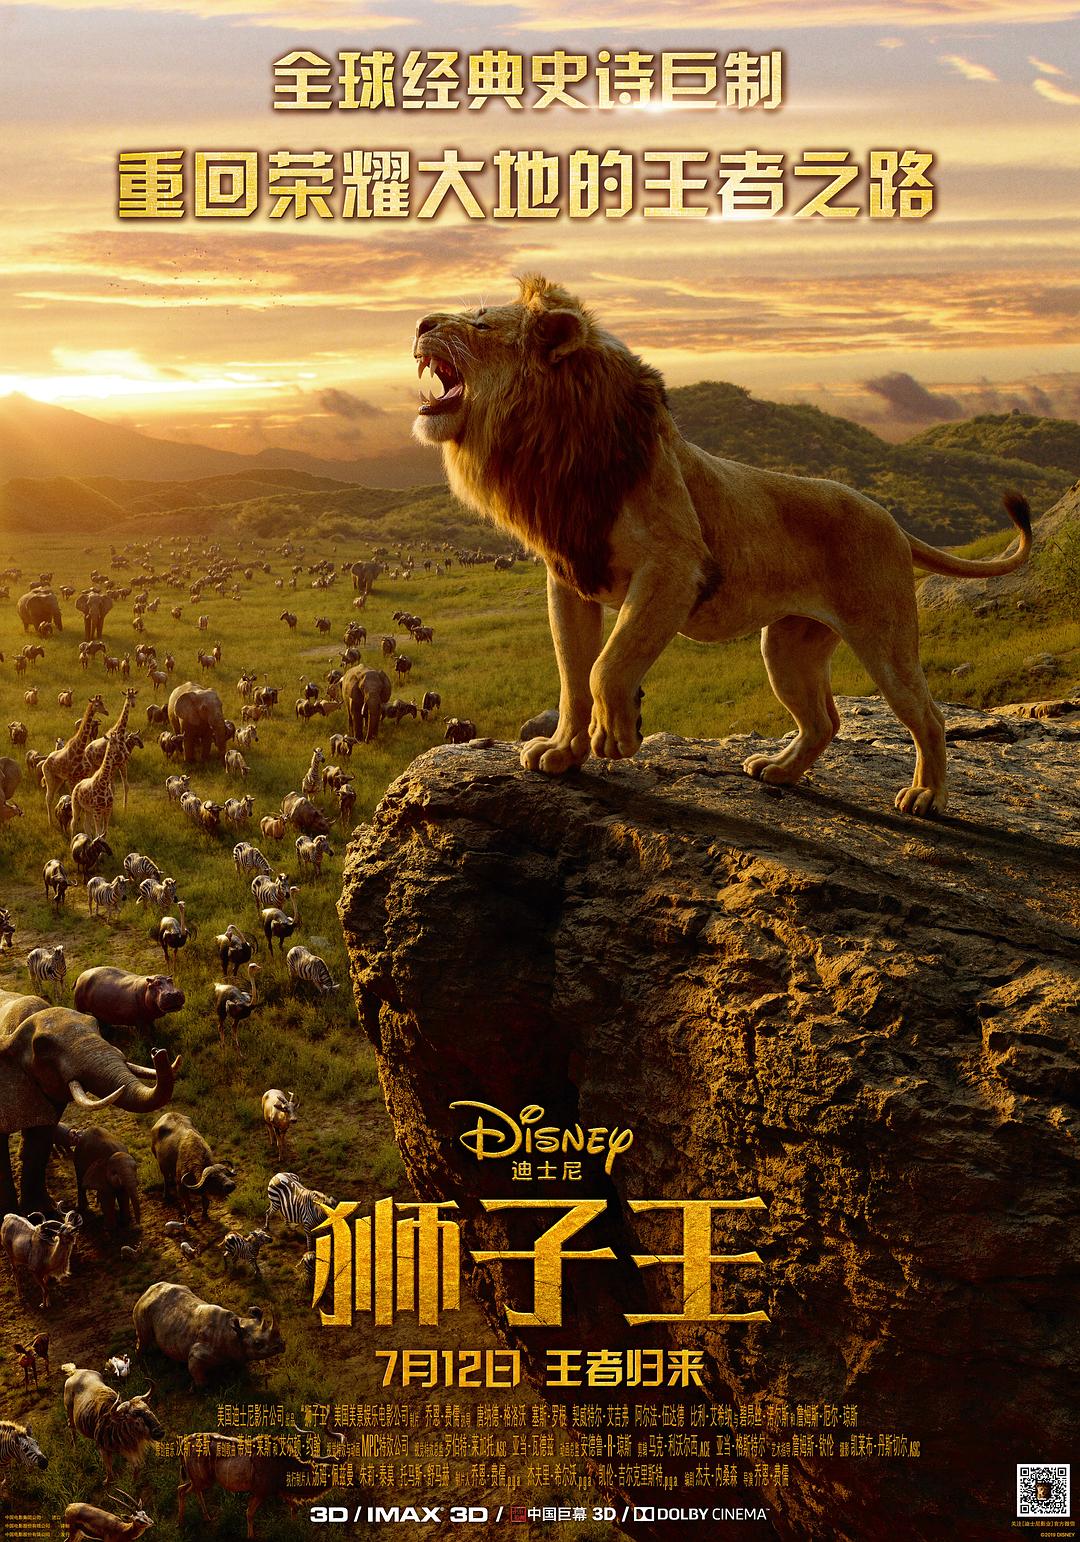 狮子王/狮子王真人版 The.Lion.King.2019.1080p.3D.BluRay.Half-SBS.x264.DTS-HD.MA.7.1-FGT 19.90GB-1.png